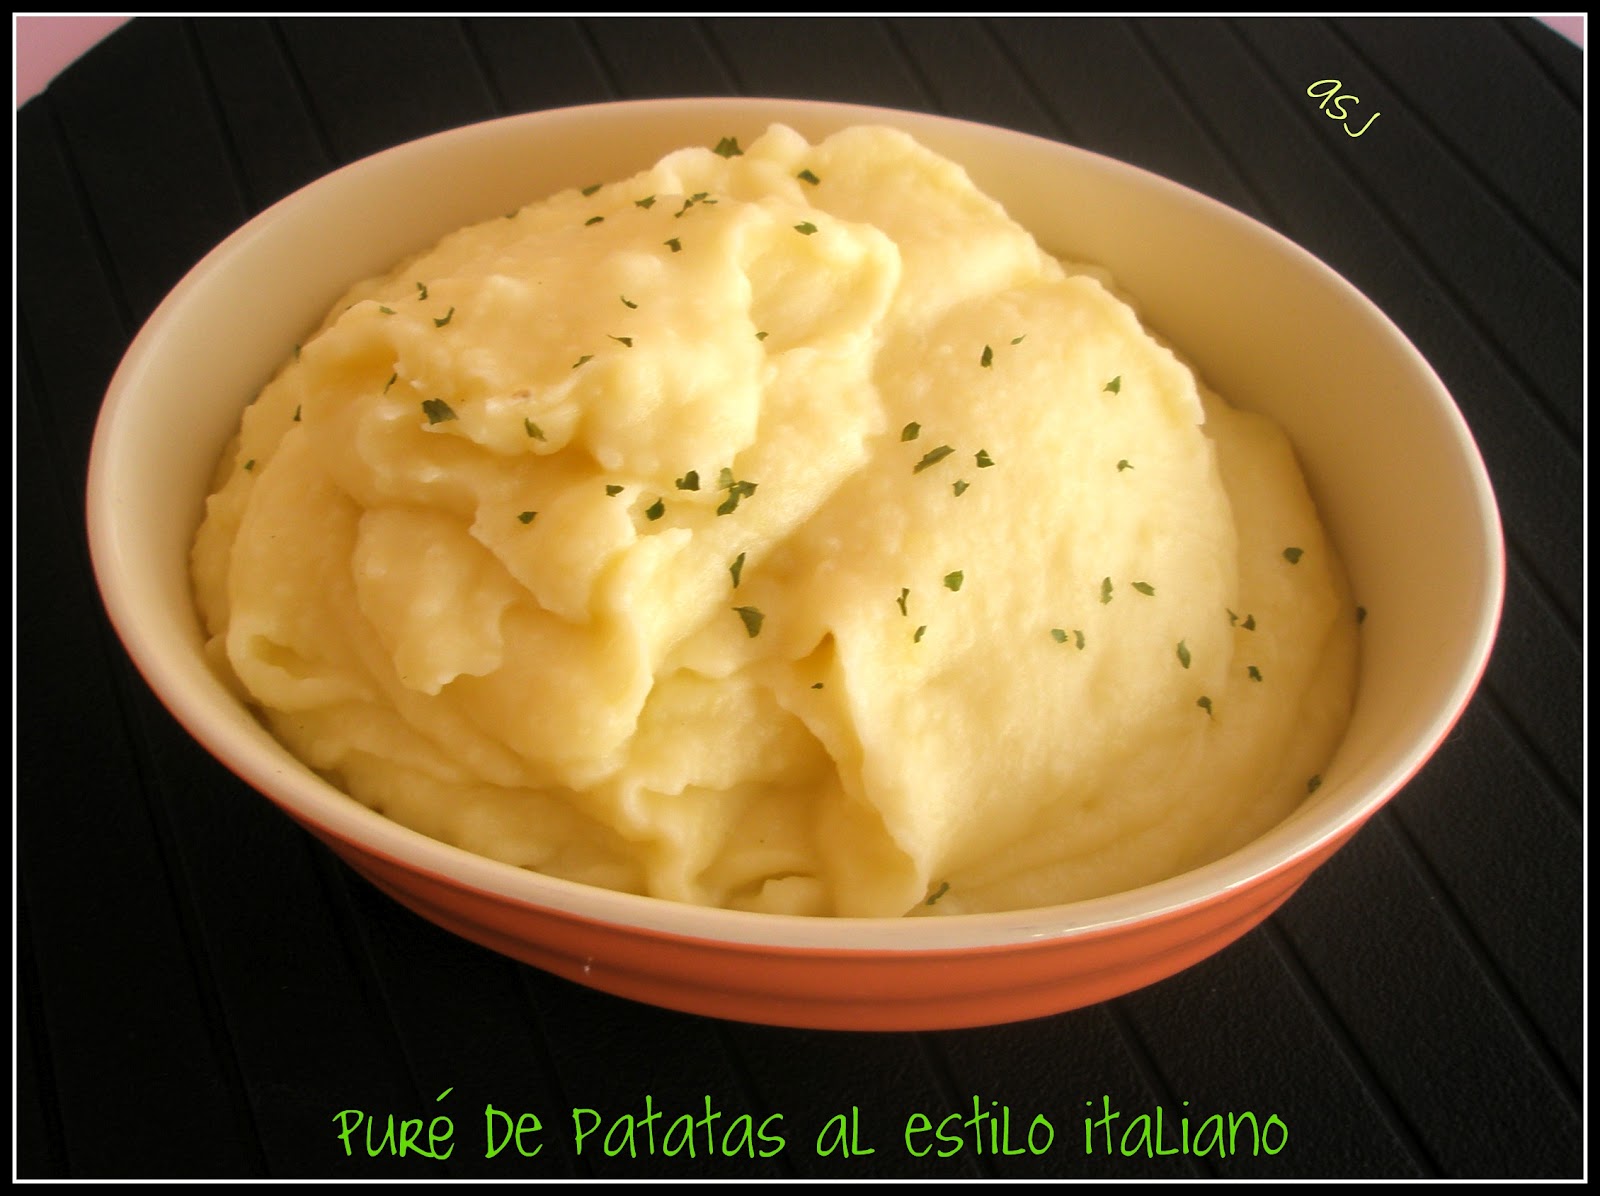 Puré de patatas - Deliciosa receta italiana - Filippo Berio